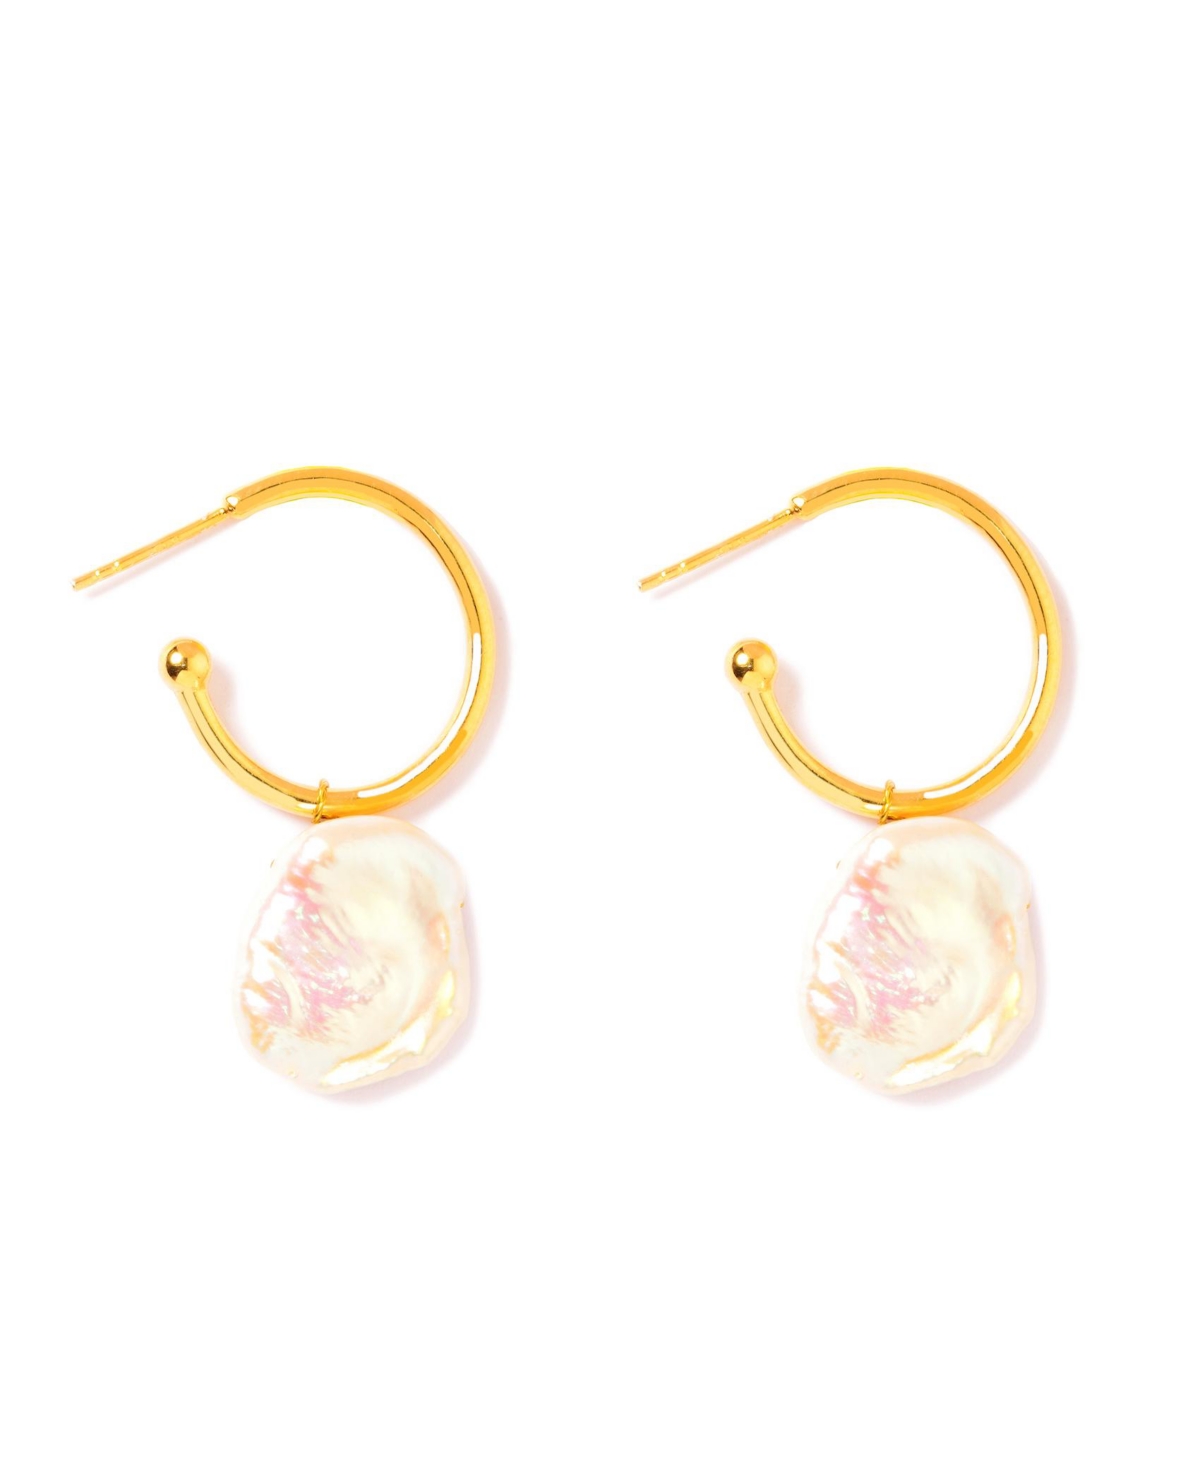 Fresh Water Potency Hoop Earrings - Gold Plated